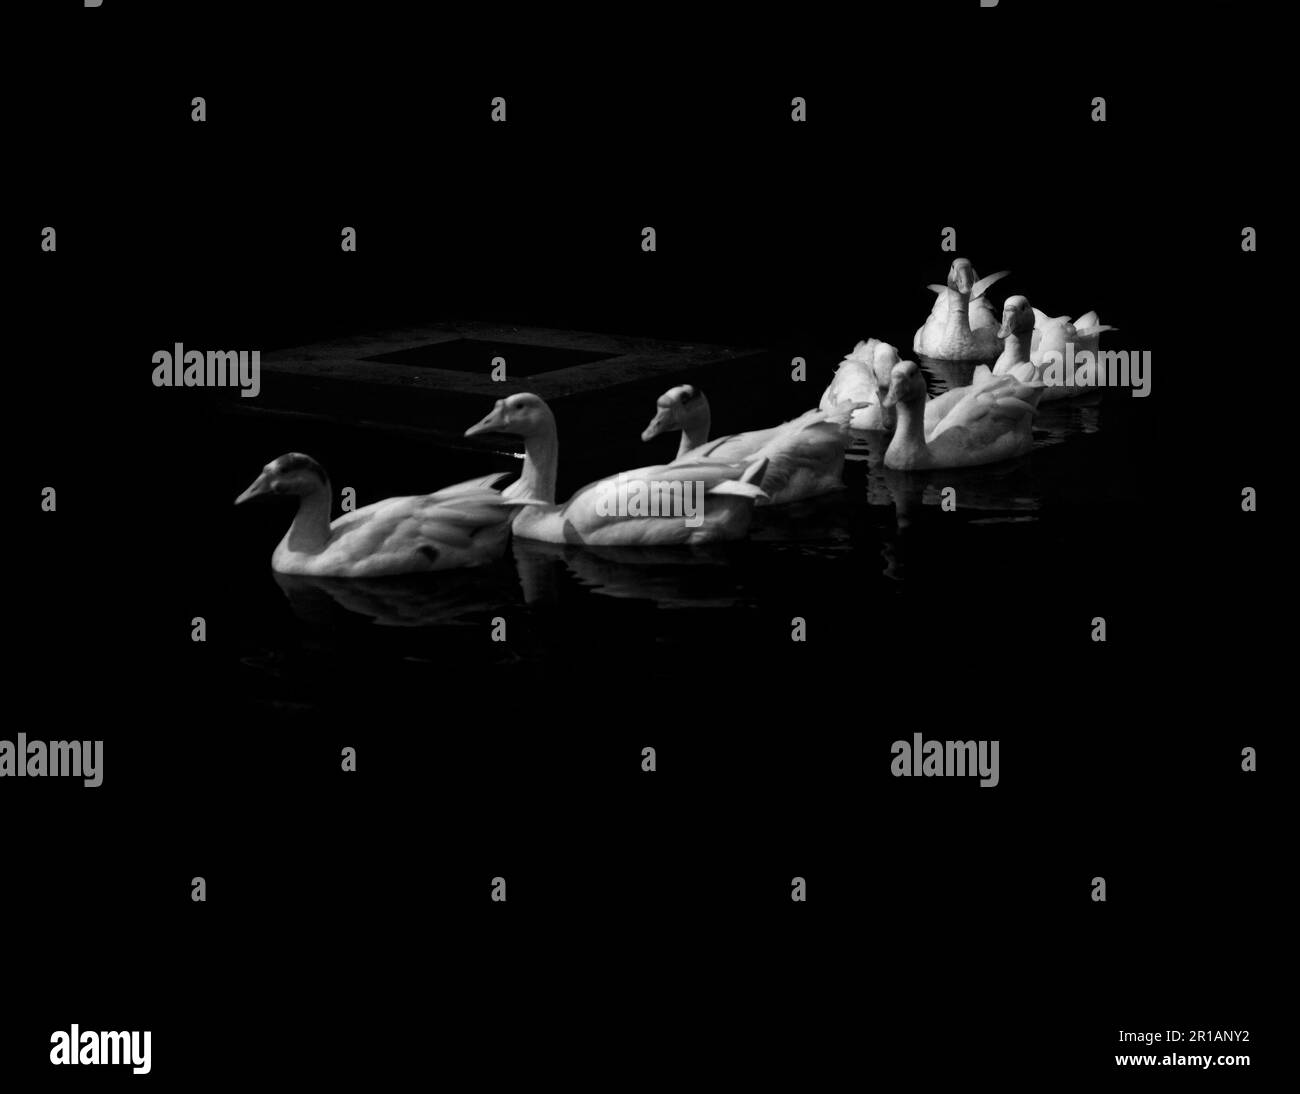 Una scala di grigi di un laghetto tranquillo caratterizzato da un modello di anatre bianche che nuotano con grazia Foto Stock